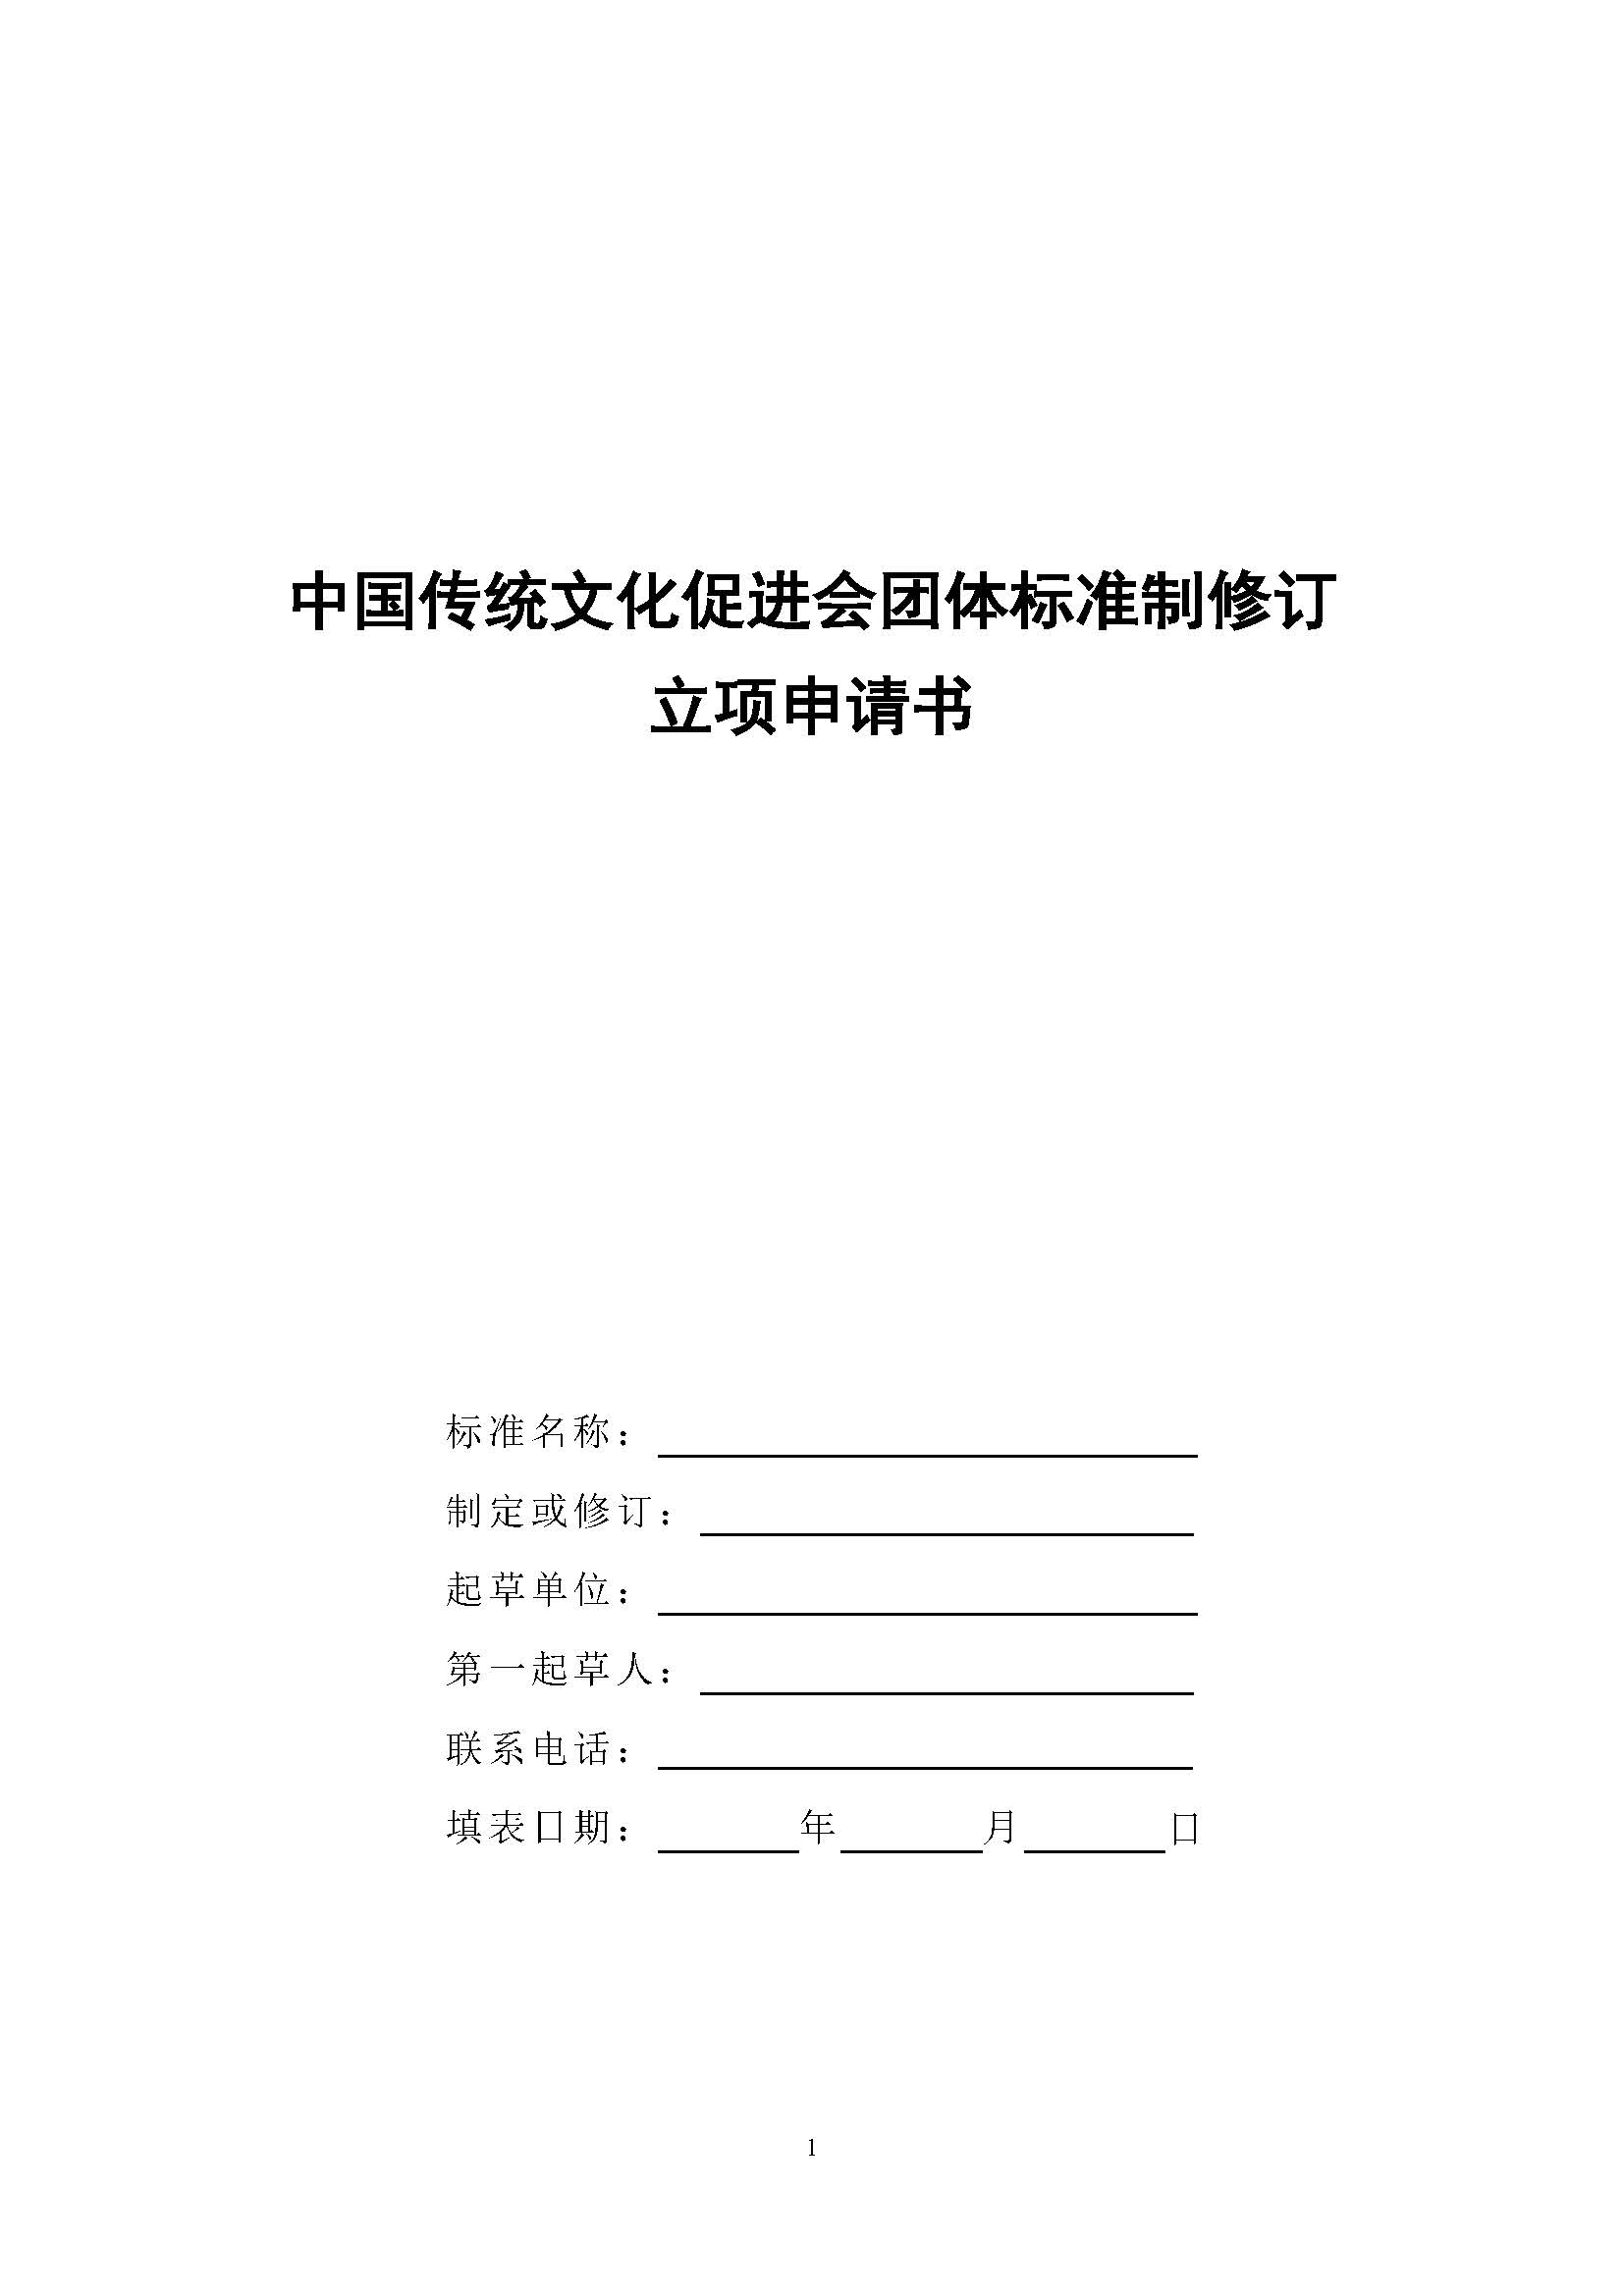 中国传统文化促进会团体标准制修订立项申请书